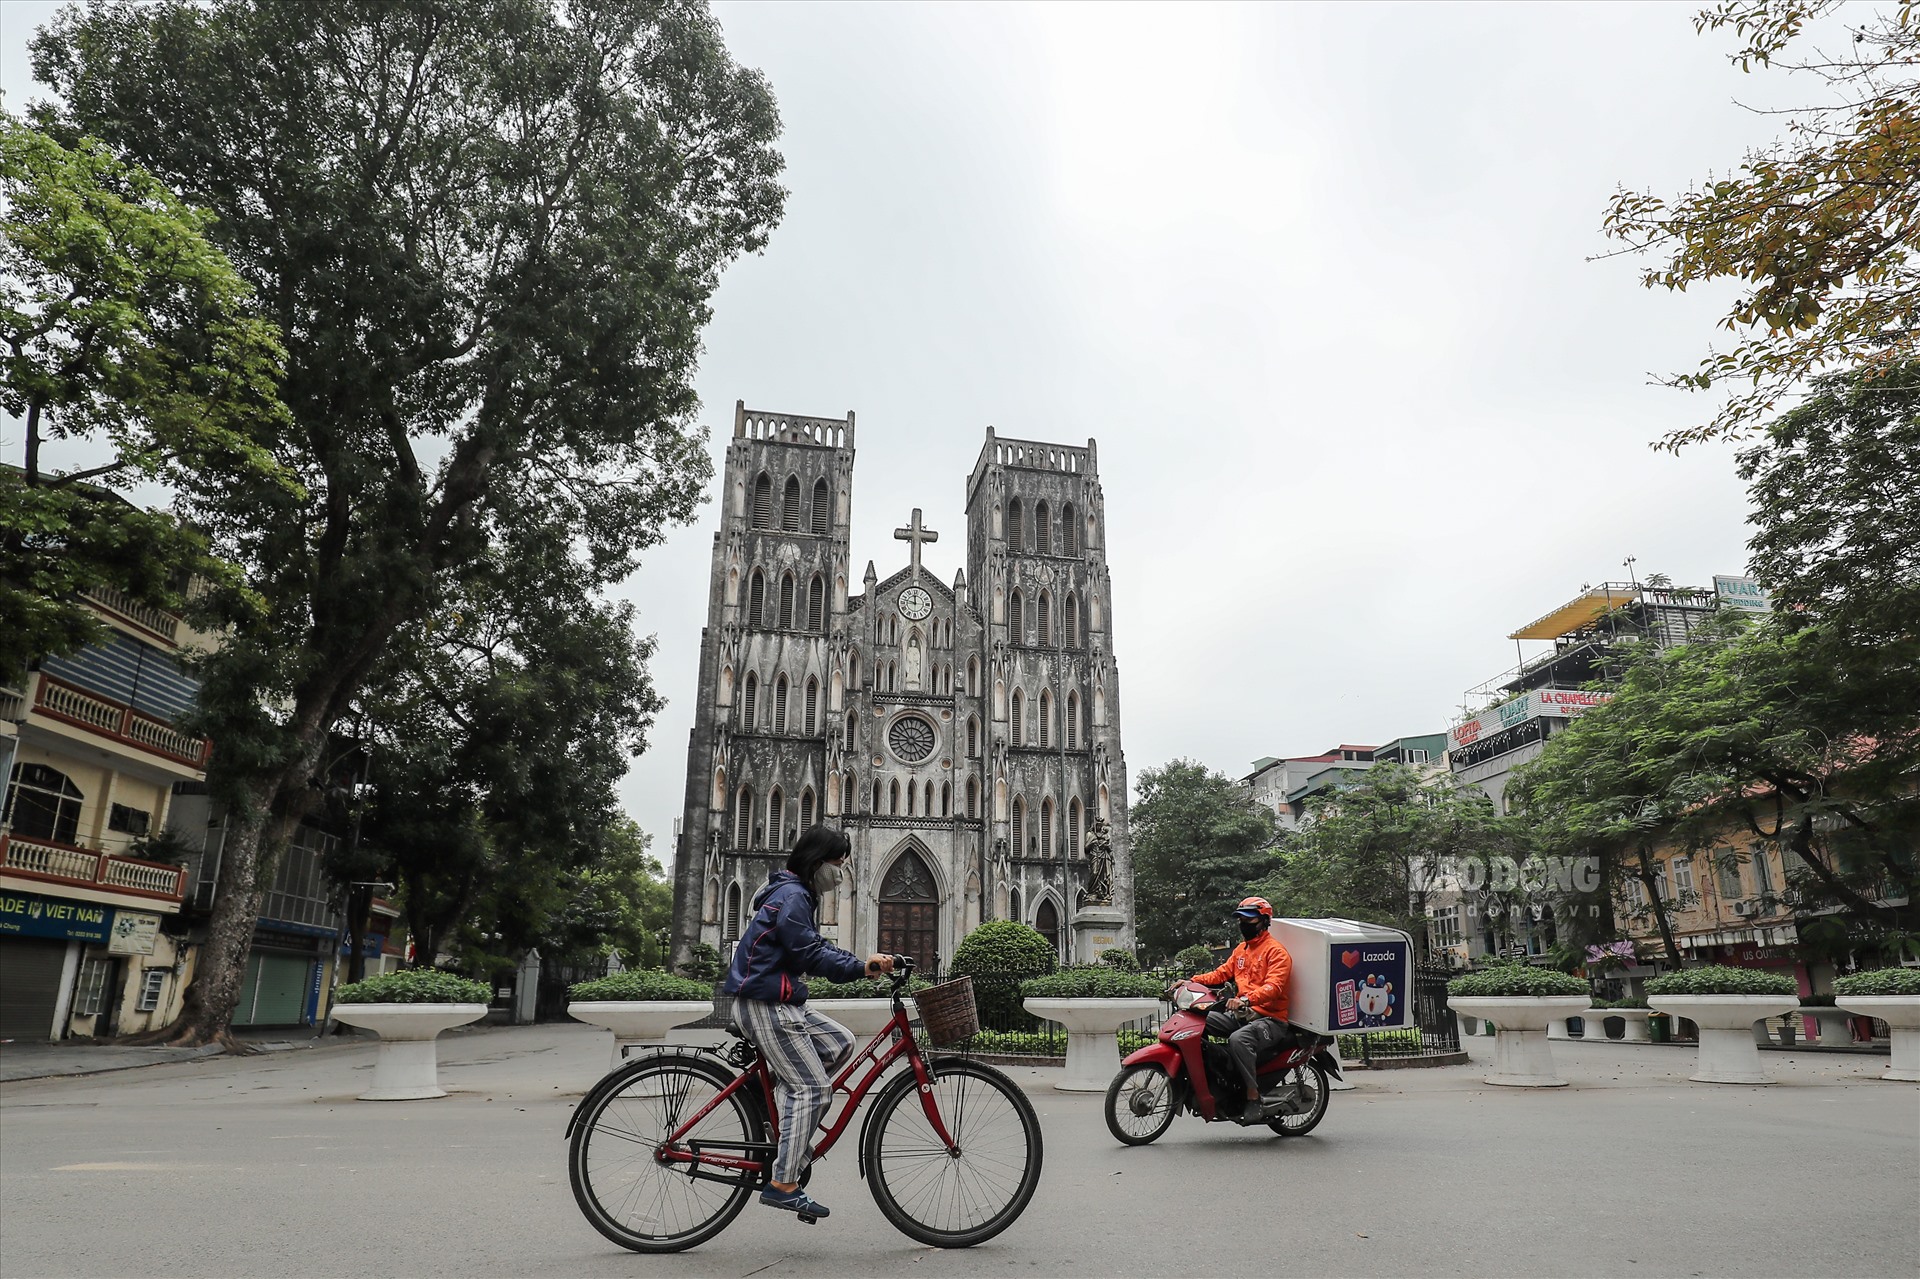 Tại một số địa danh nổi tiếng tại Hà Nội như chợ Đồng Xuân, Văn Miếu - Quốc Tử Giám hay Nhà thờ Lớn vắng bóng người qua lại sau chỉ thị cách ly toàn xã hội của Thủ tướng.